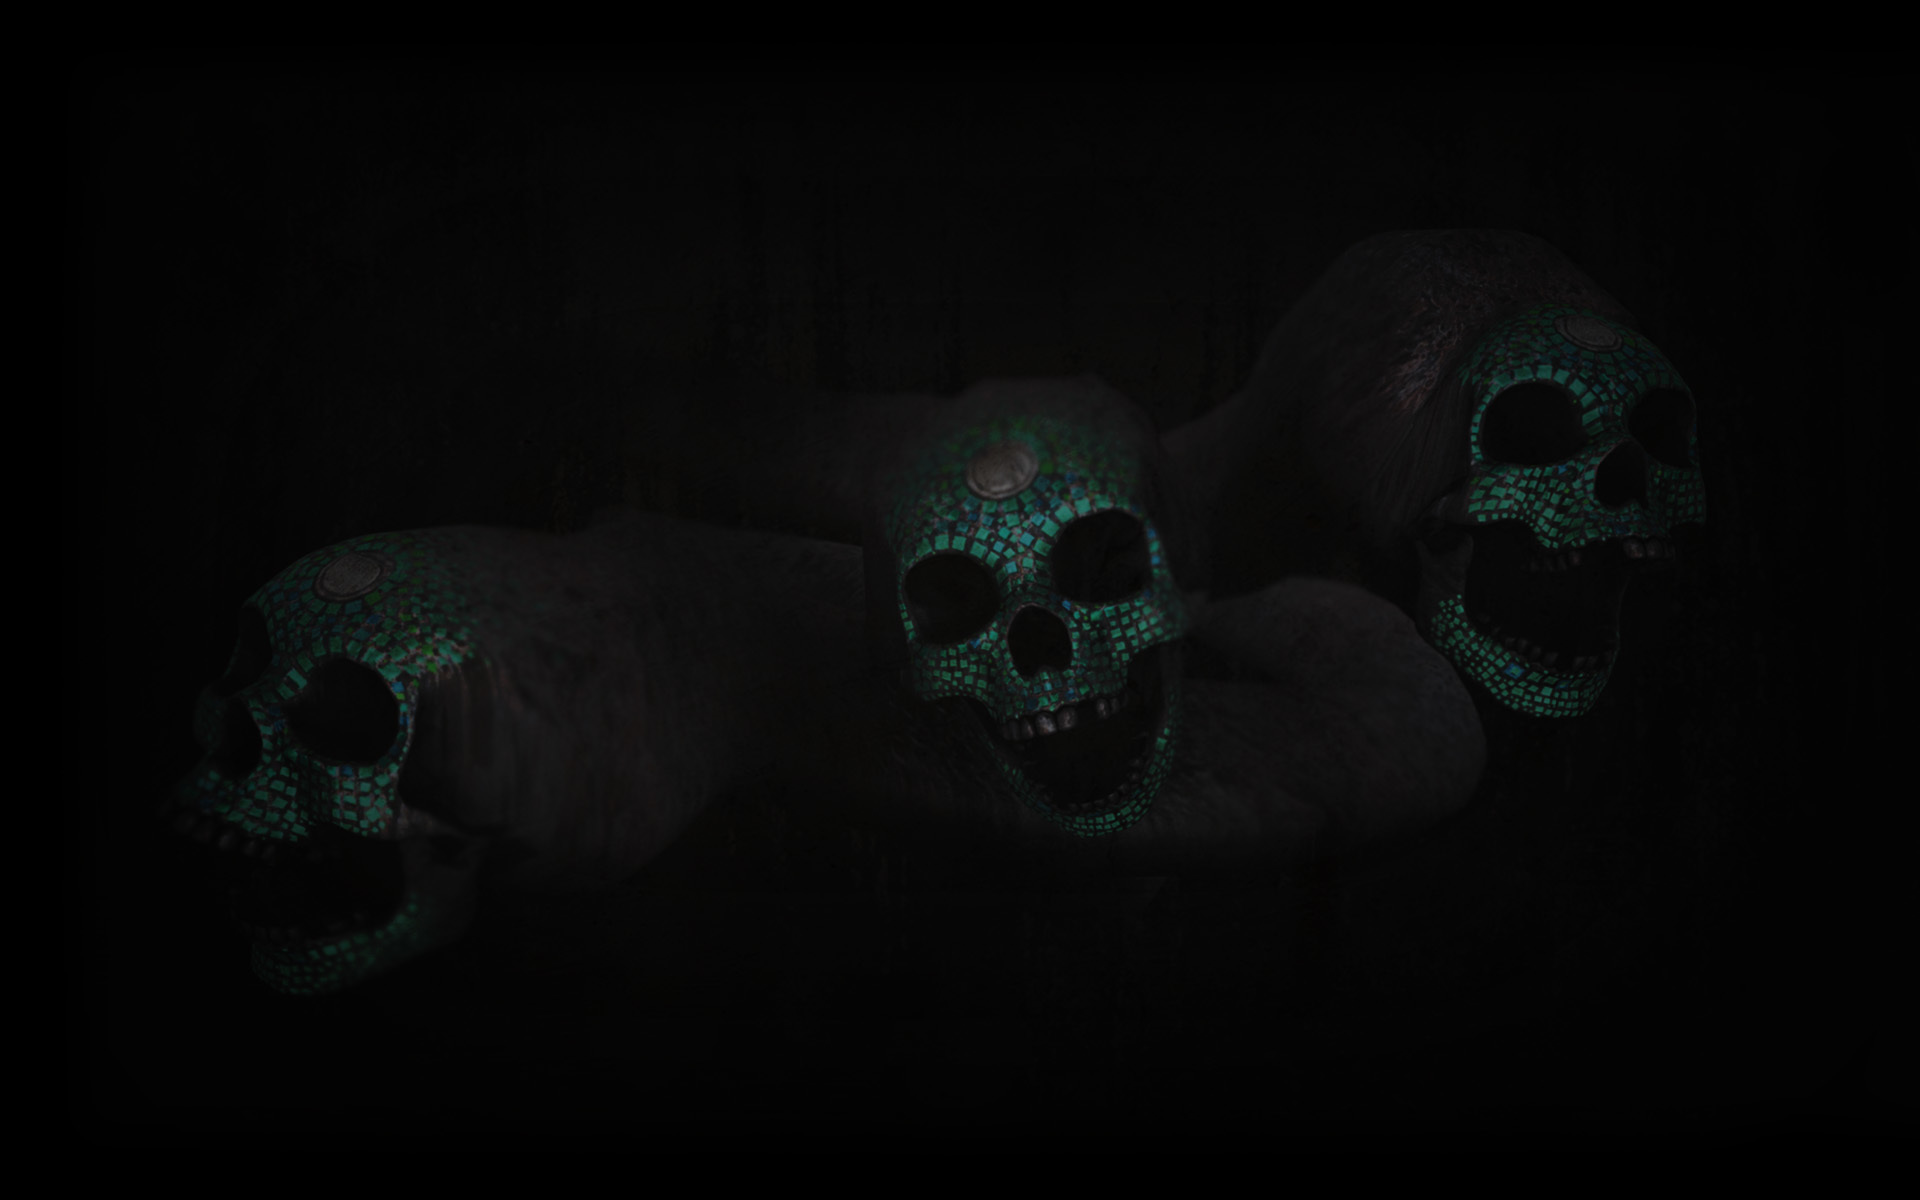 Steam background with skulls?